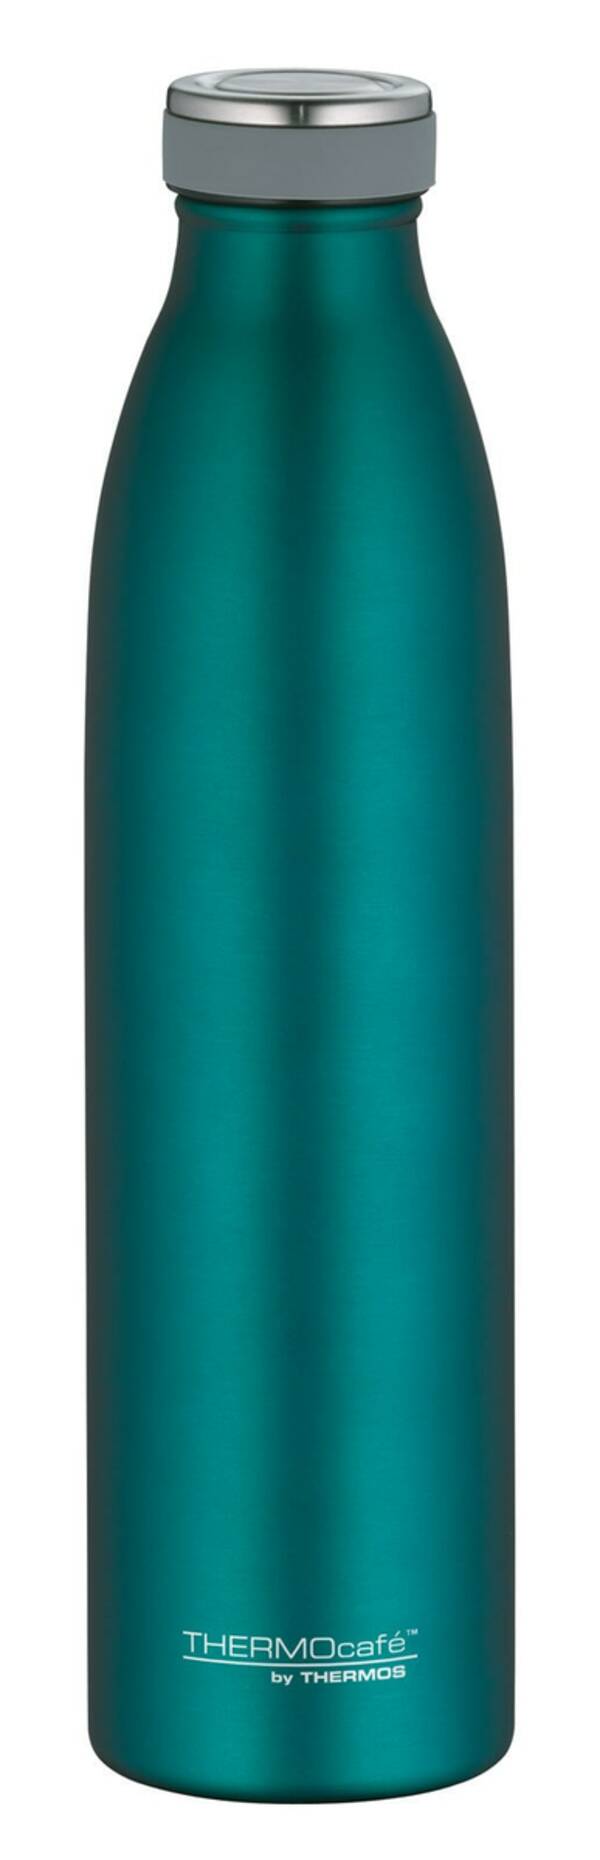 Bild 1 von THERMOcafe by THERMOS Isolierflasche TC 750 ml Edelstahl grün matt